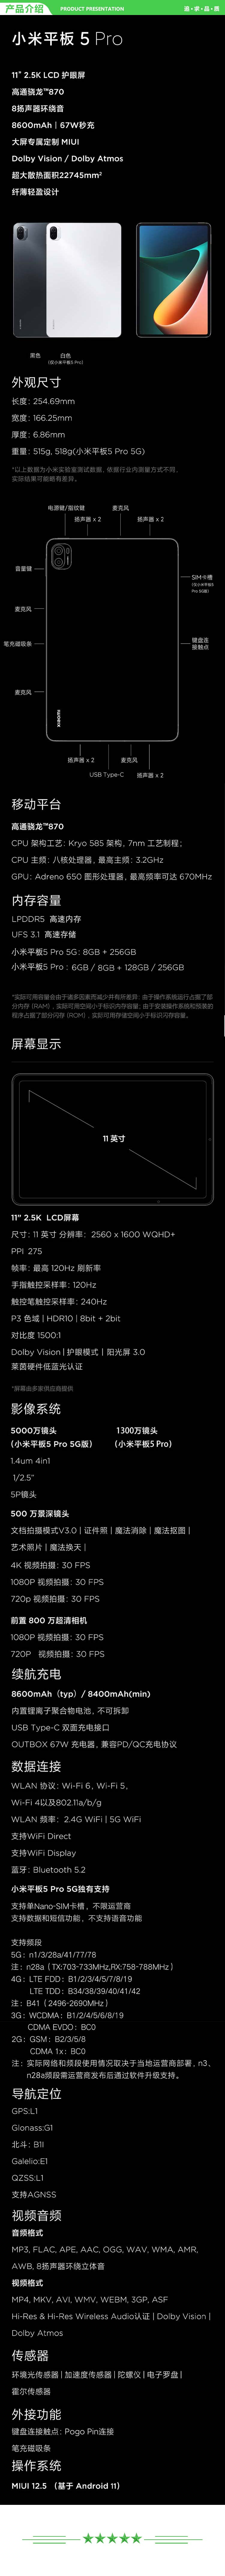 小米 xiaomi 平板5 Pro 5G版 平板电脑（11英寸2.5K高清 120Hz 骁龙860 8G+256GB 67W快充 杜比影音娱乐办公）.jpg